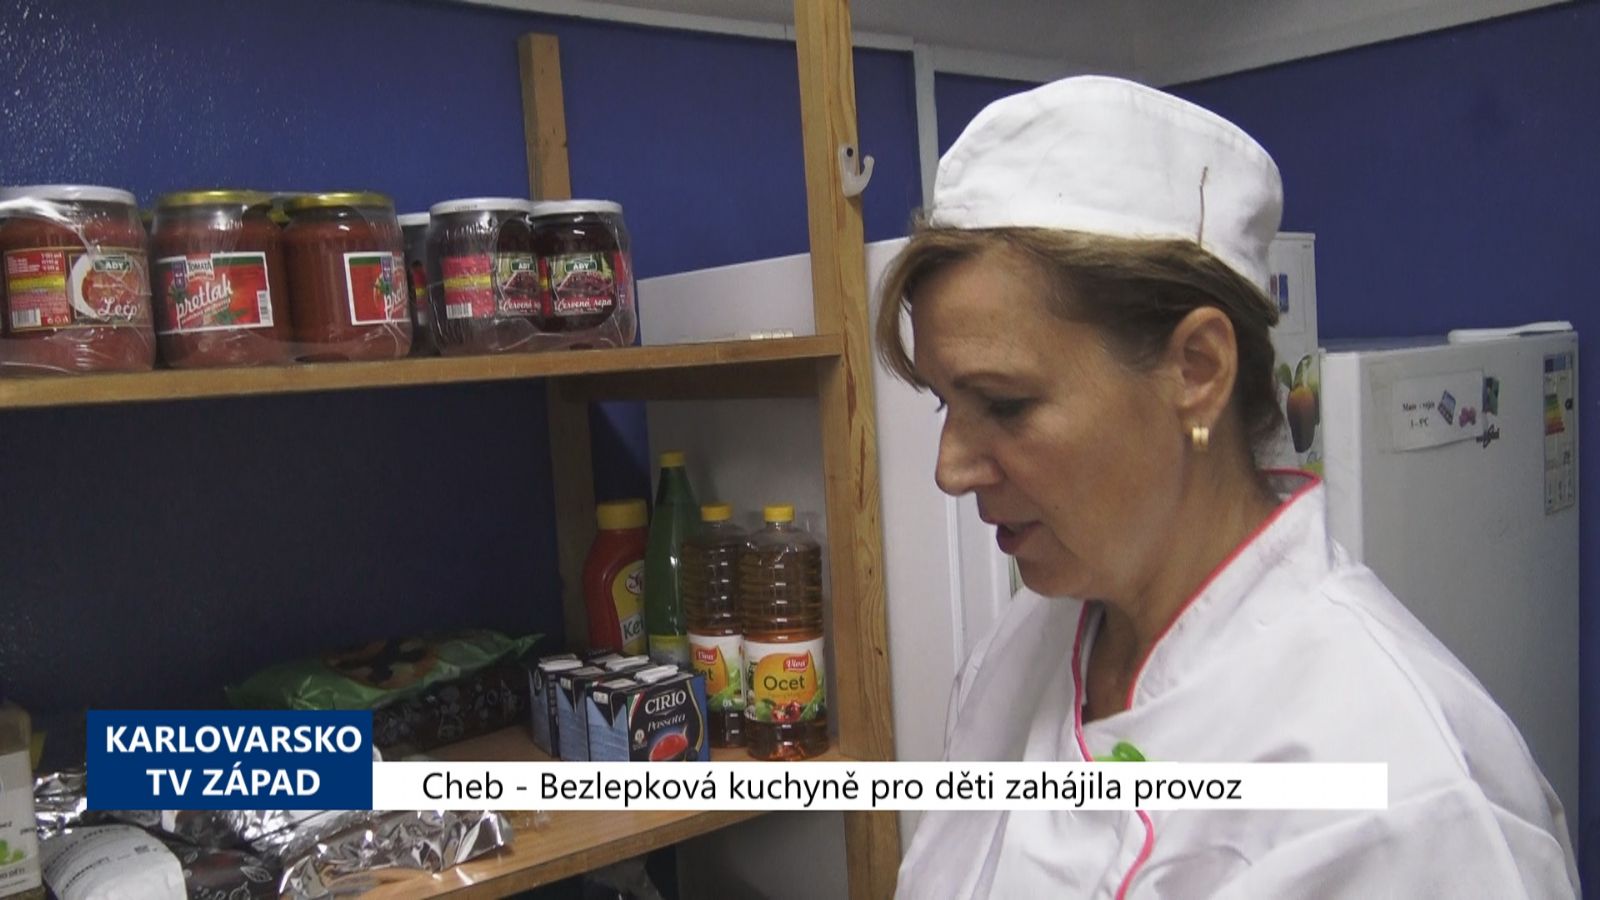 Cheb: Bezlepková kuchyně pro děti zahájila provoz (TV Západ)